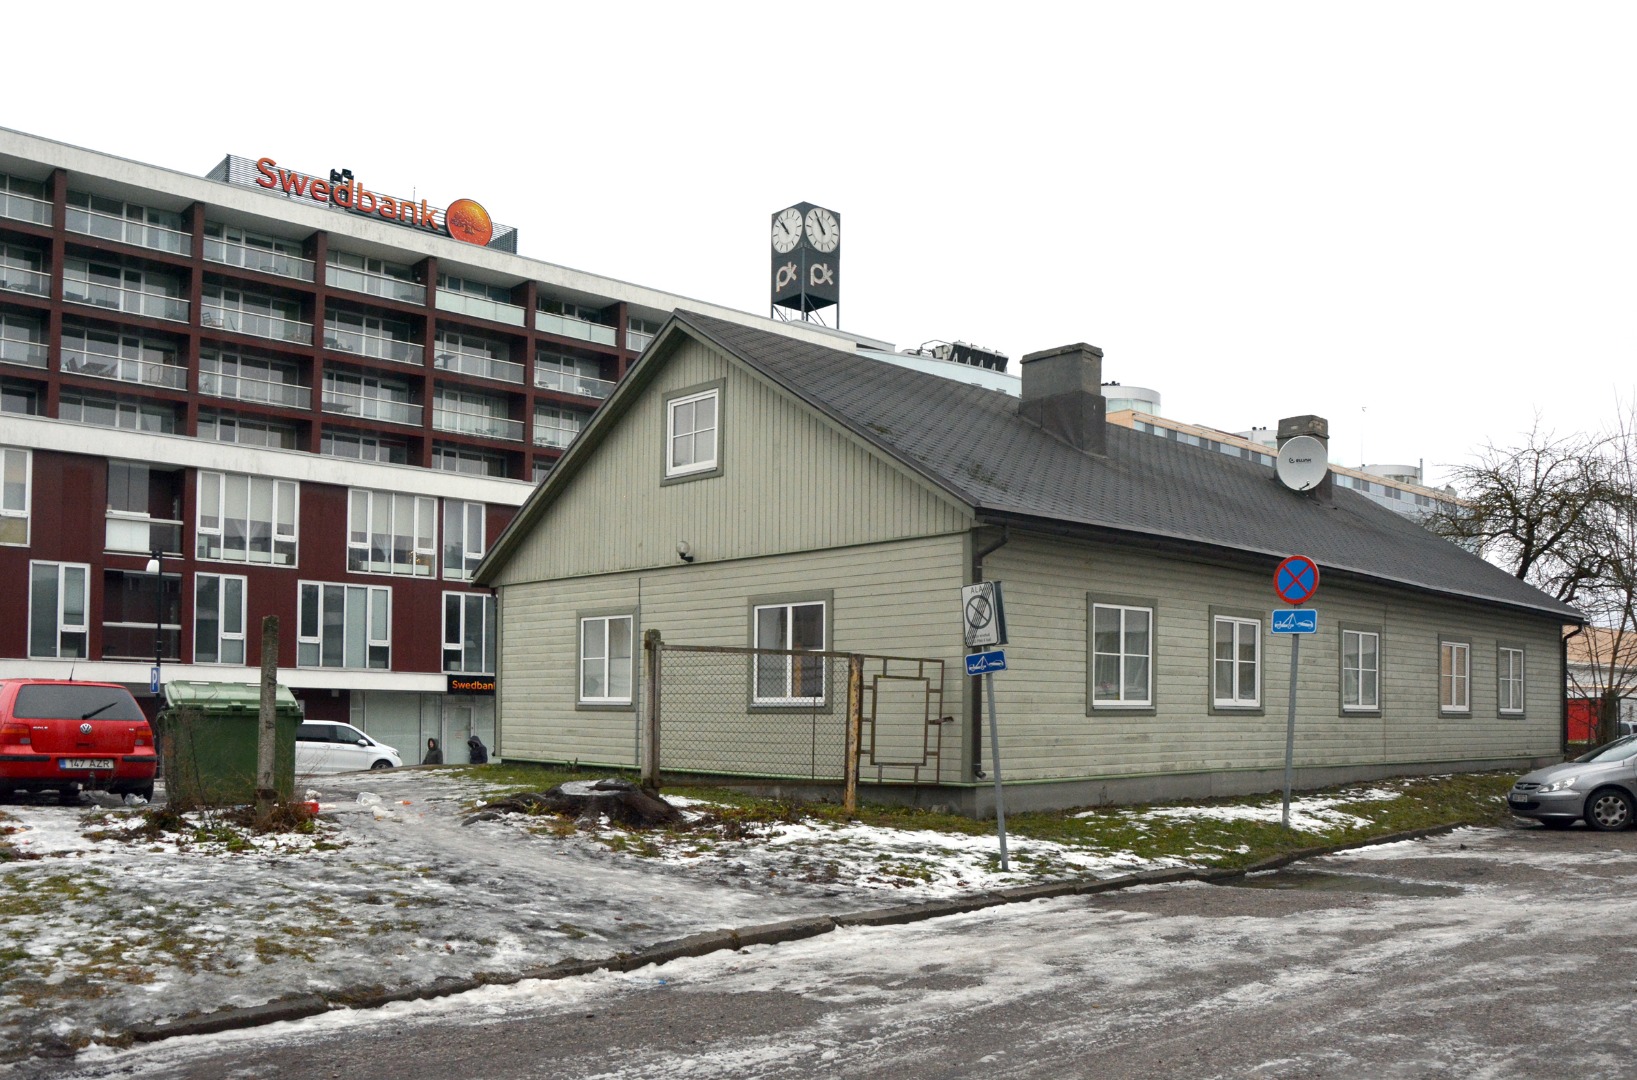 Pärnu, city view. rephoto